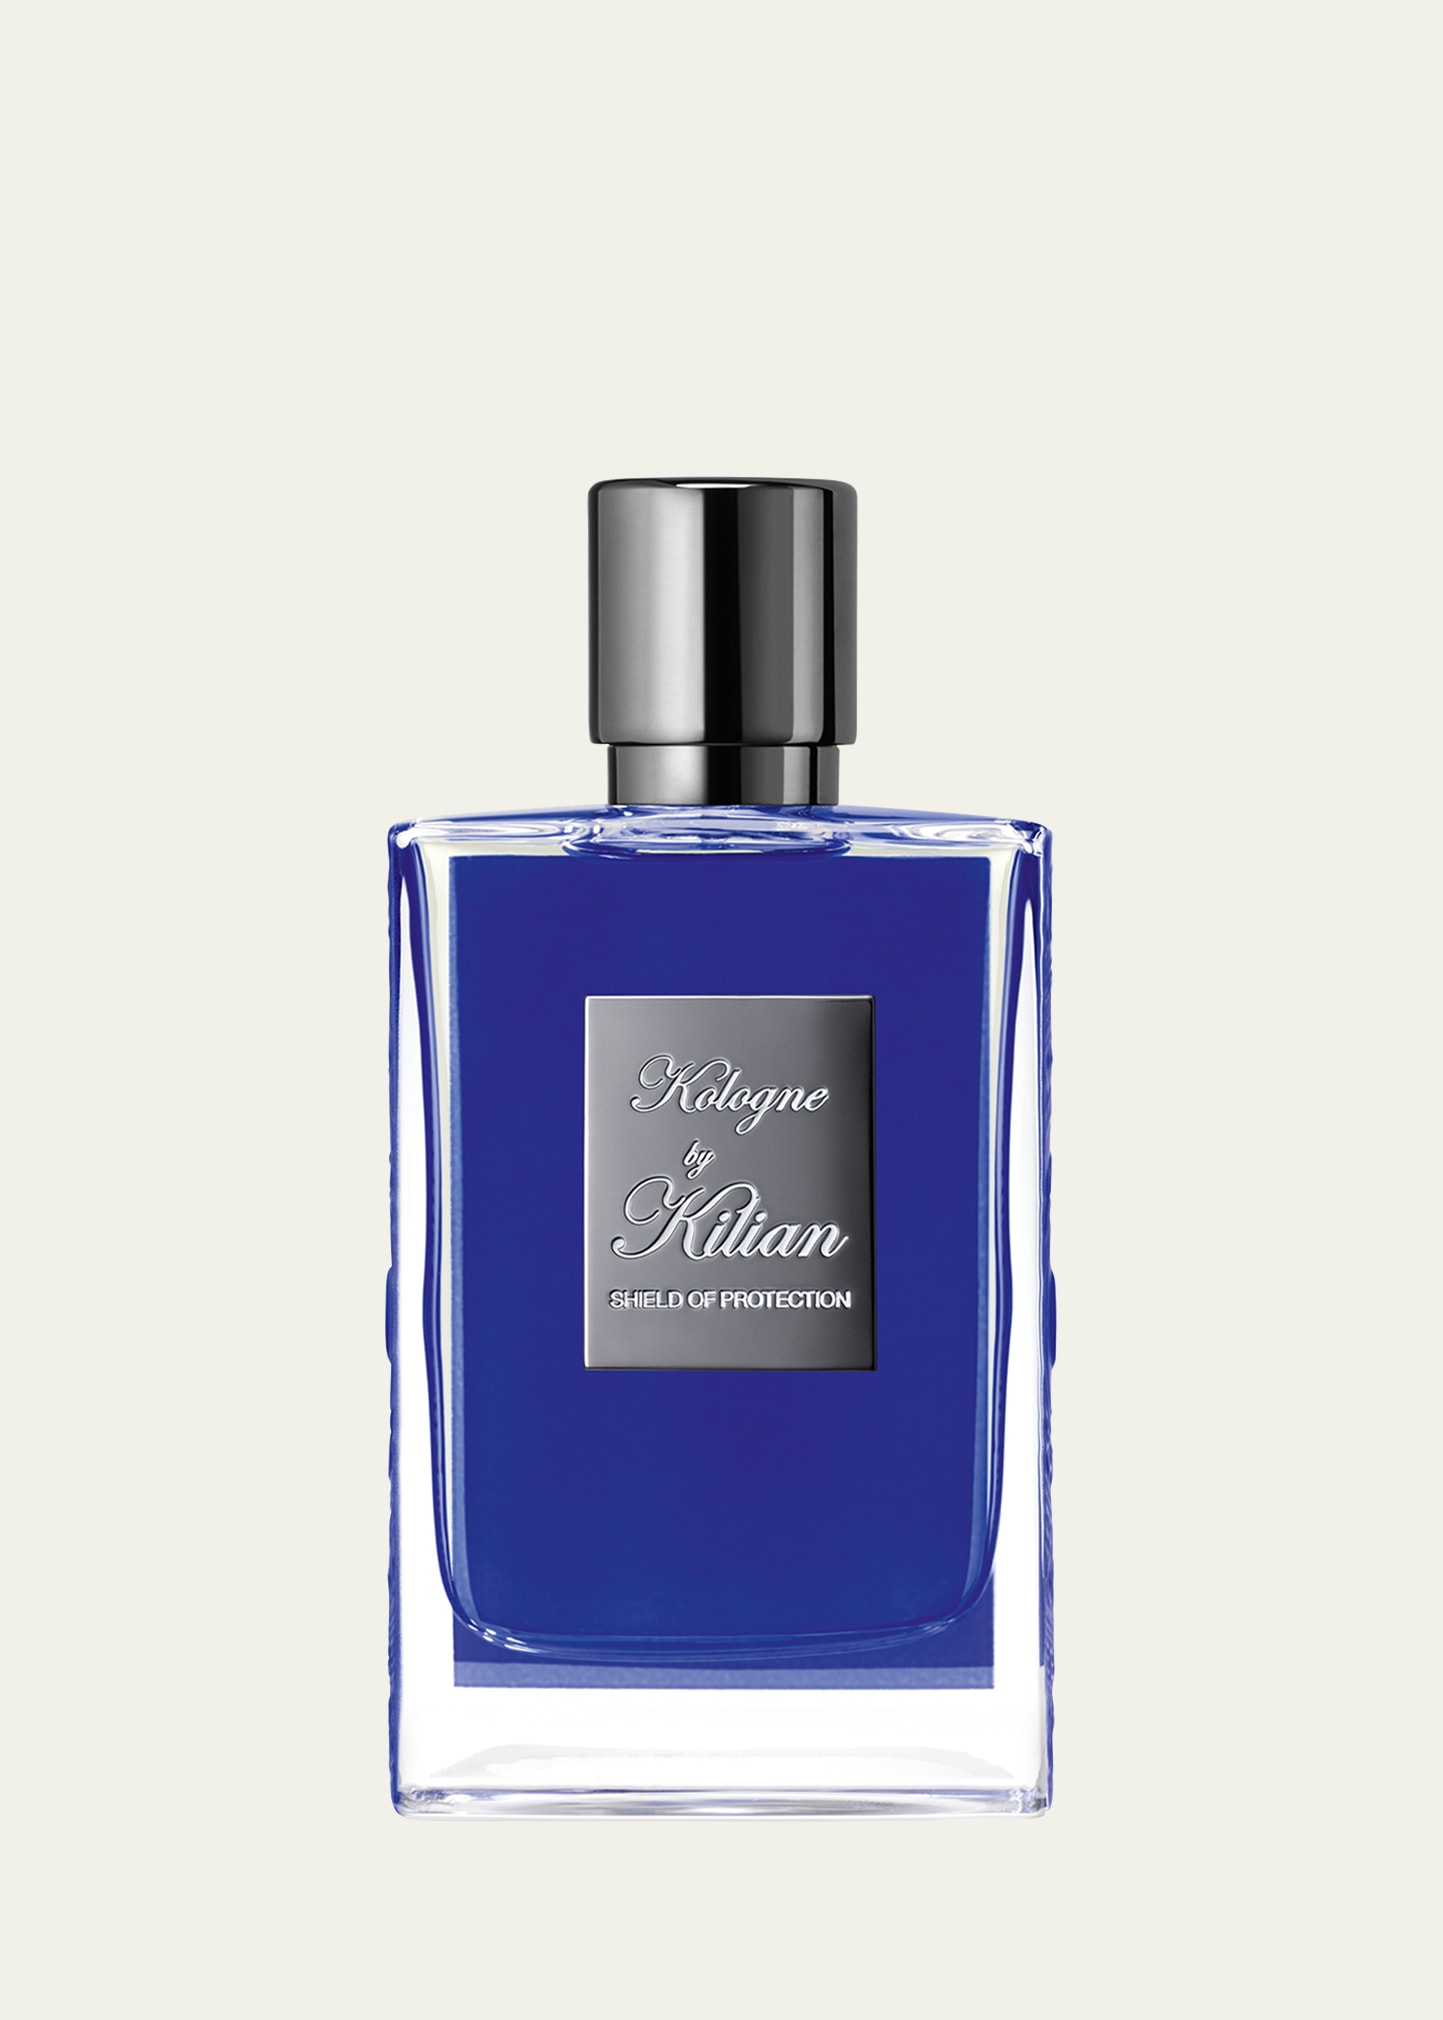 Kilian 1.7 oz. Kologne, Shield of protection Eau de Parfum